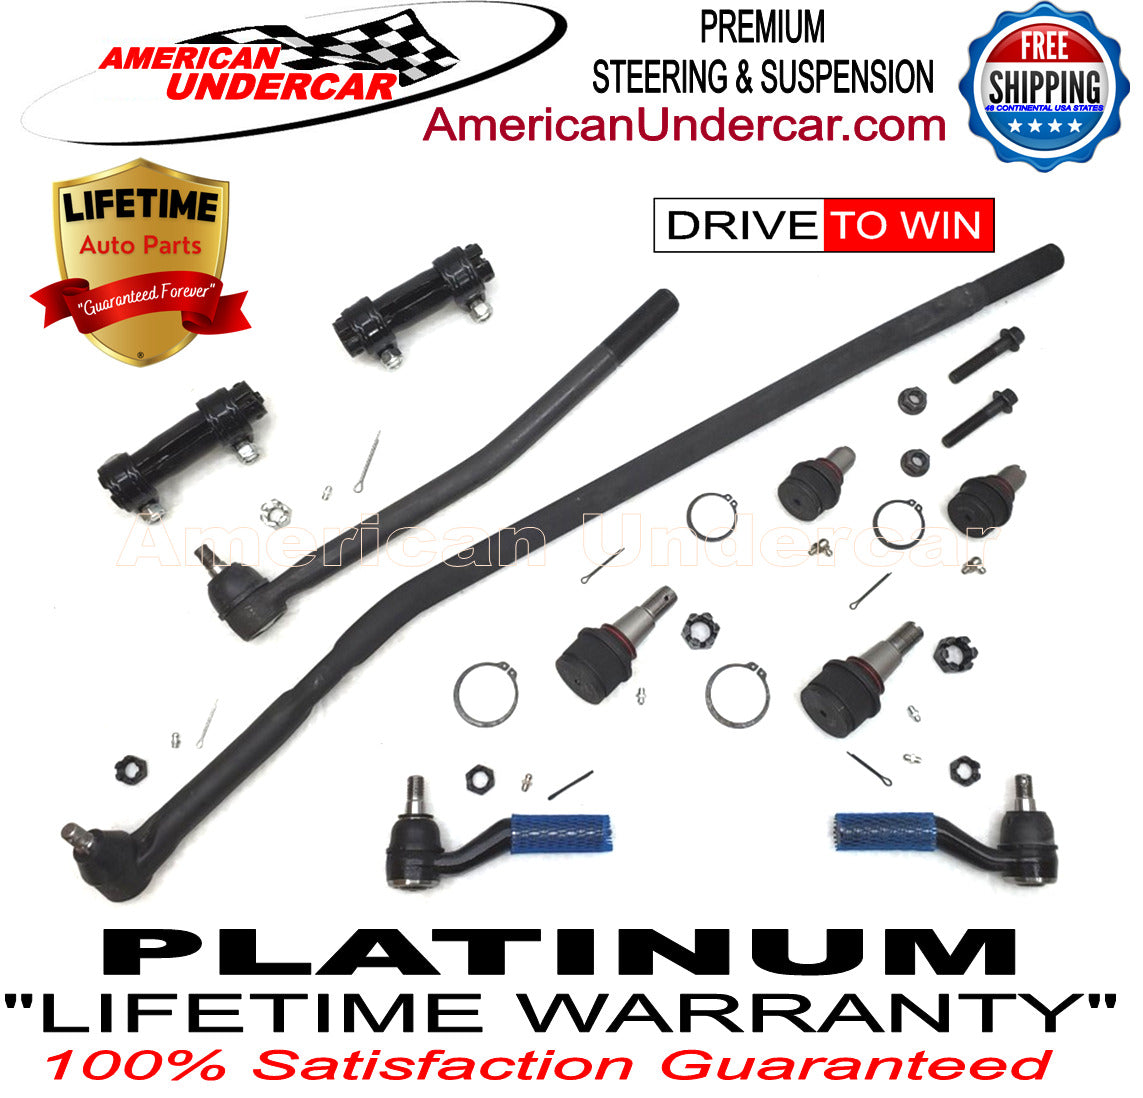 Lifetime Drag Link Tie Rod Sleeve Steering Kit for 2008-2019 Ford E450 Super Duty SRW